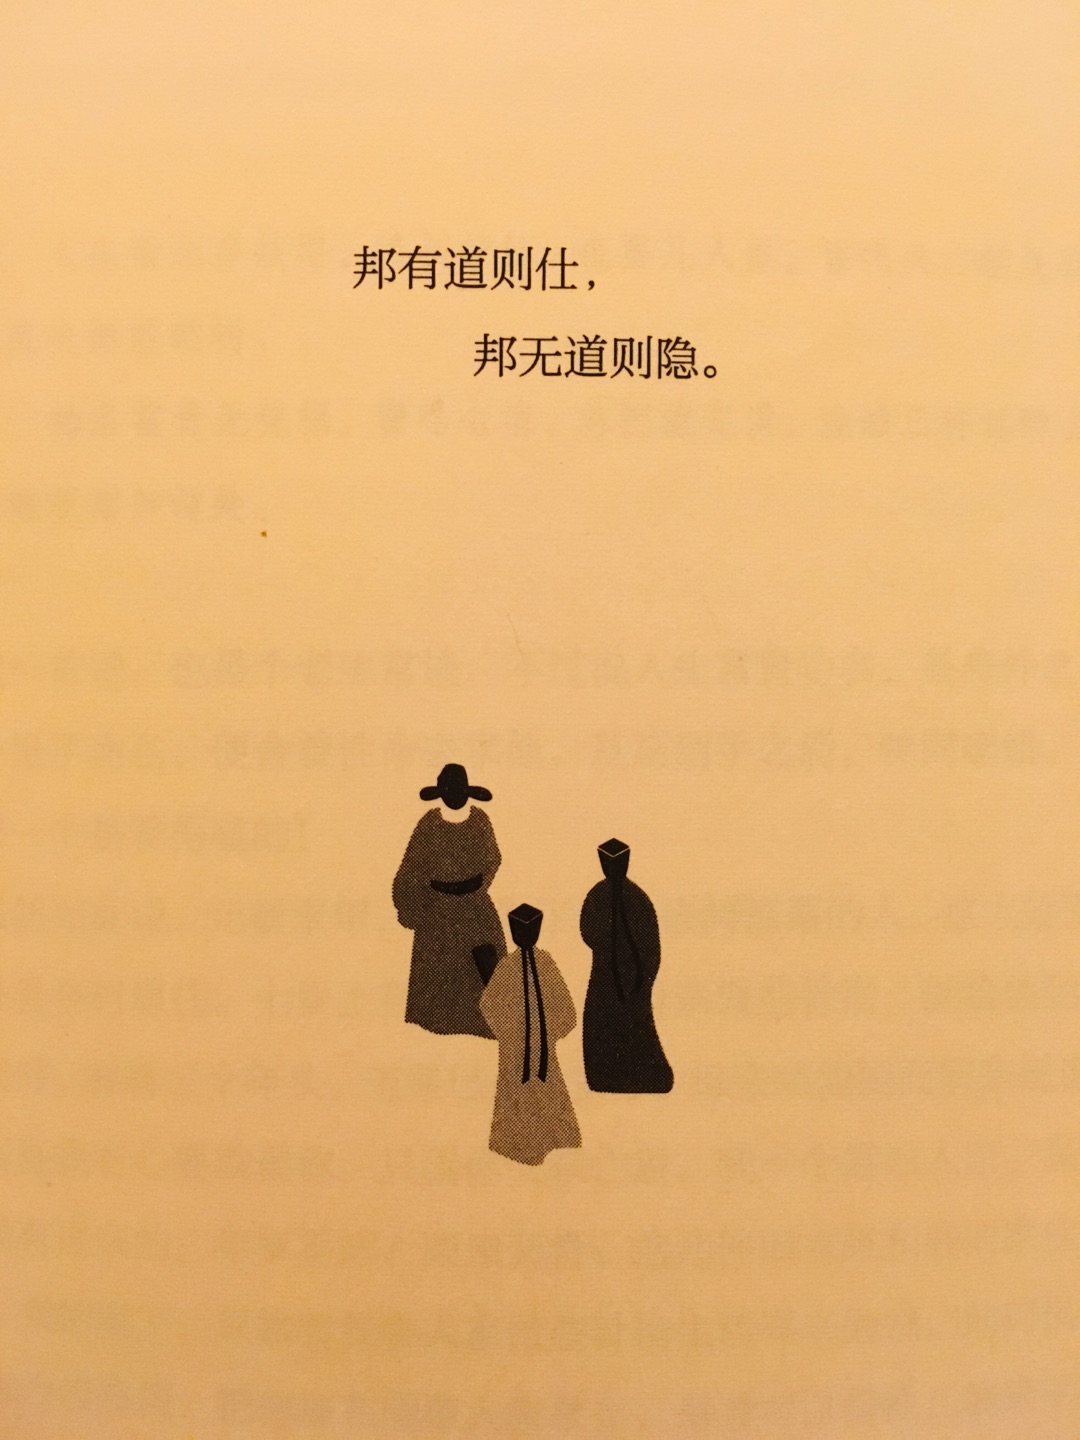 不错，书的印刷质量还好，内容也好，深深拜服中国的古典文学！